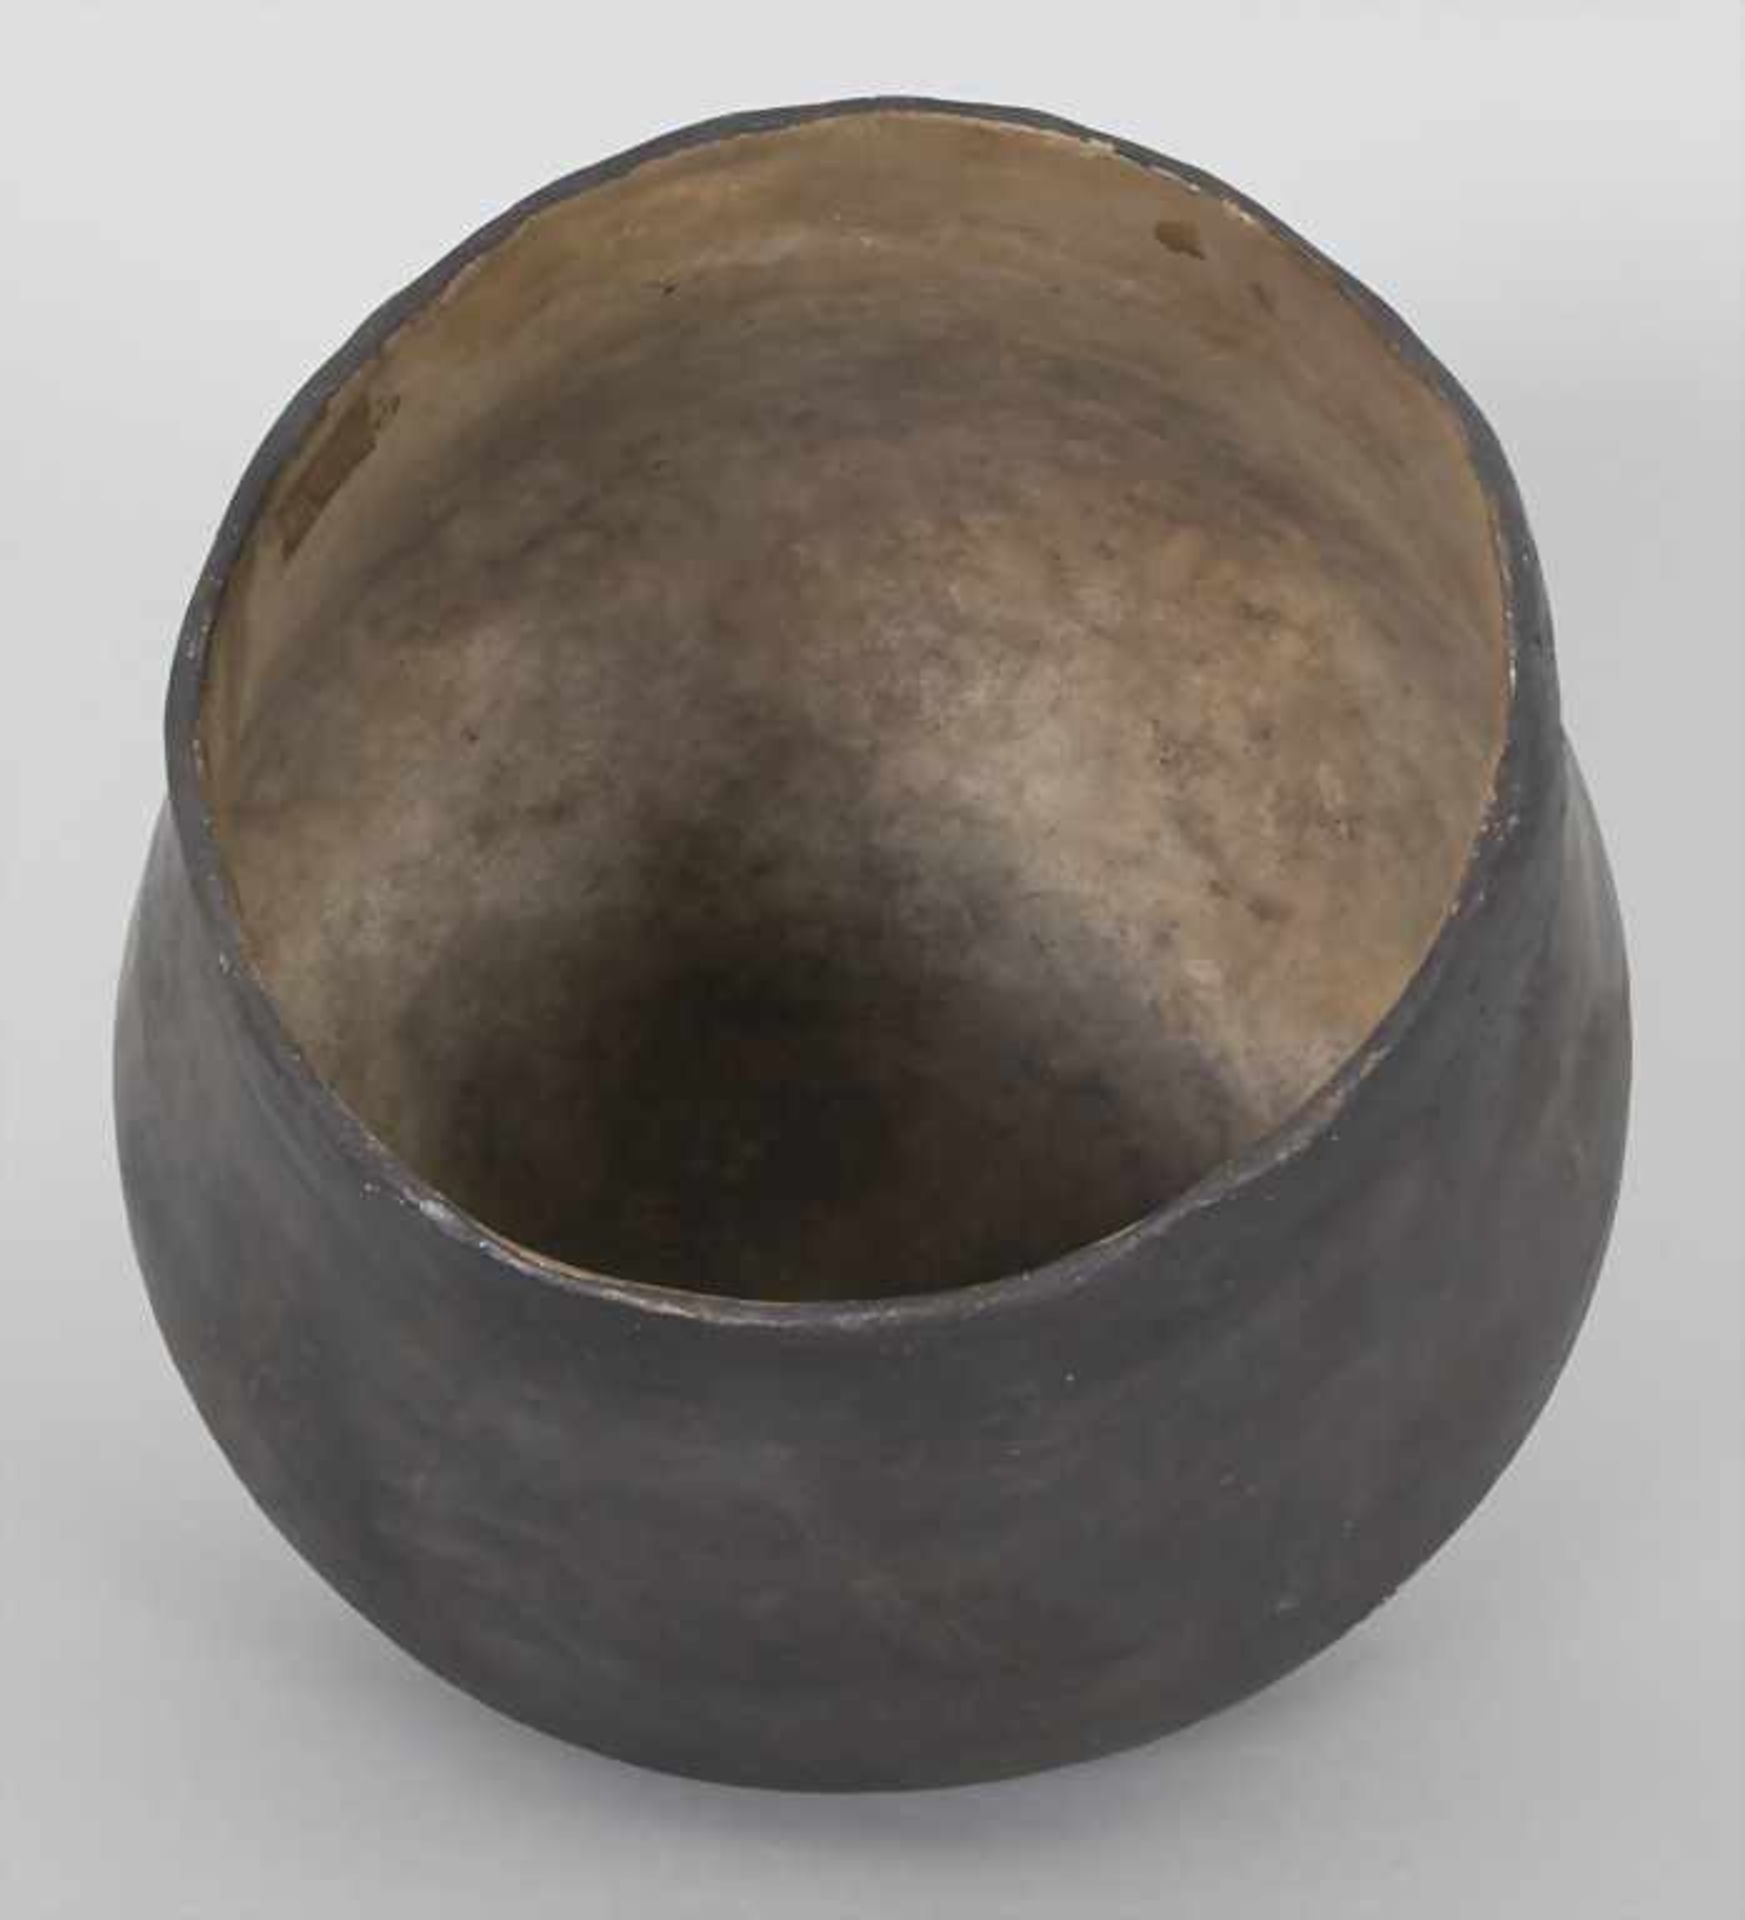 Bronzezeitliches Keramik-Gefäß / A Bronze Age ceramic vessel, Lausitzer Kultur, 9. - 6. Jh. v. Chr. - Image 4 of 6